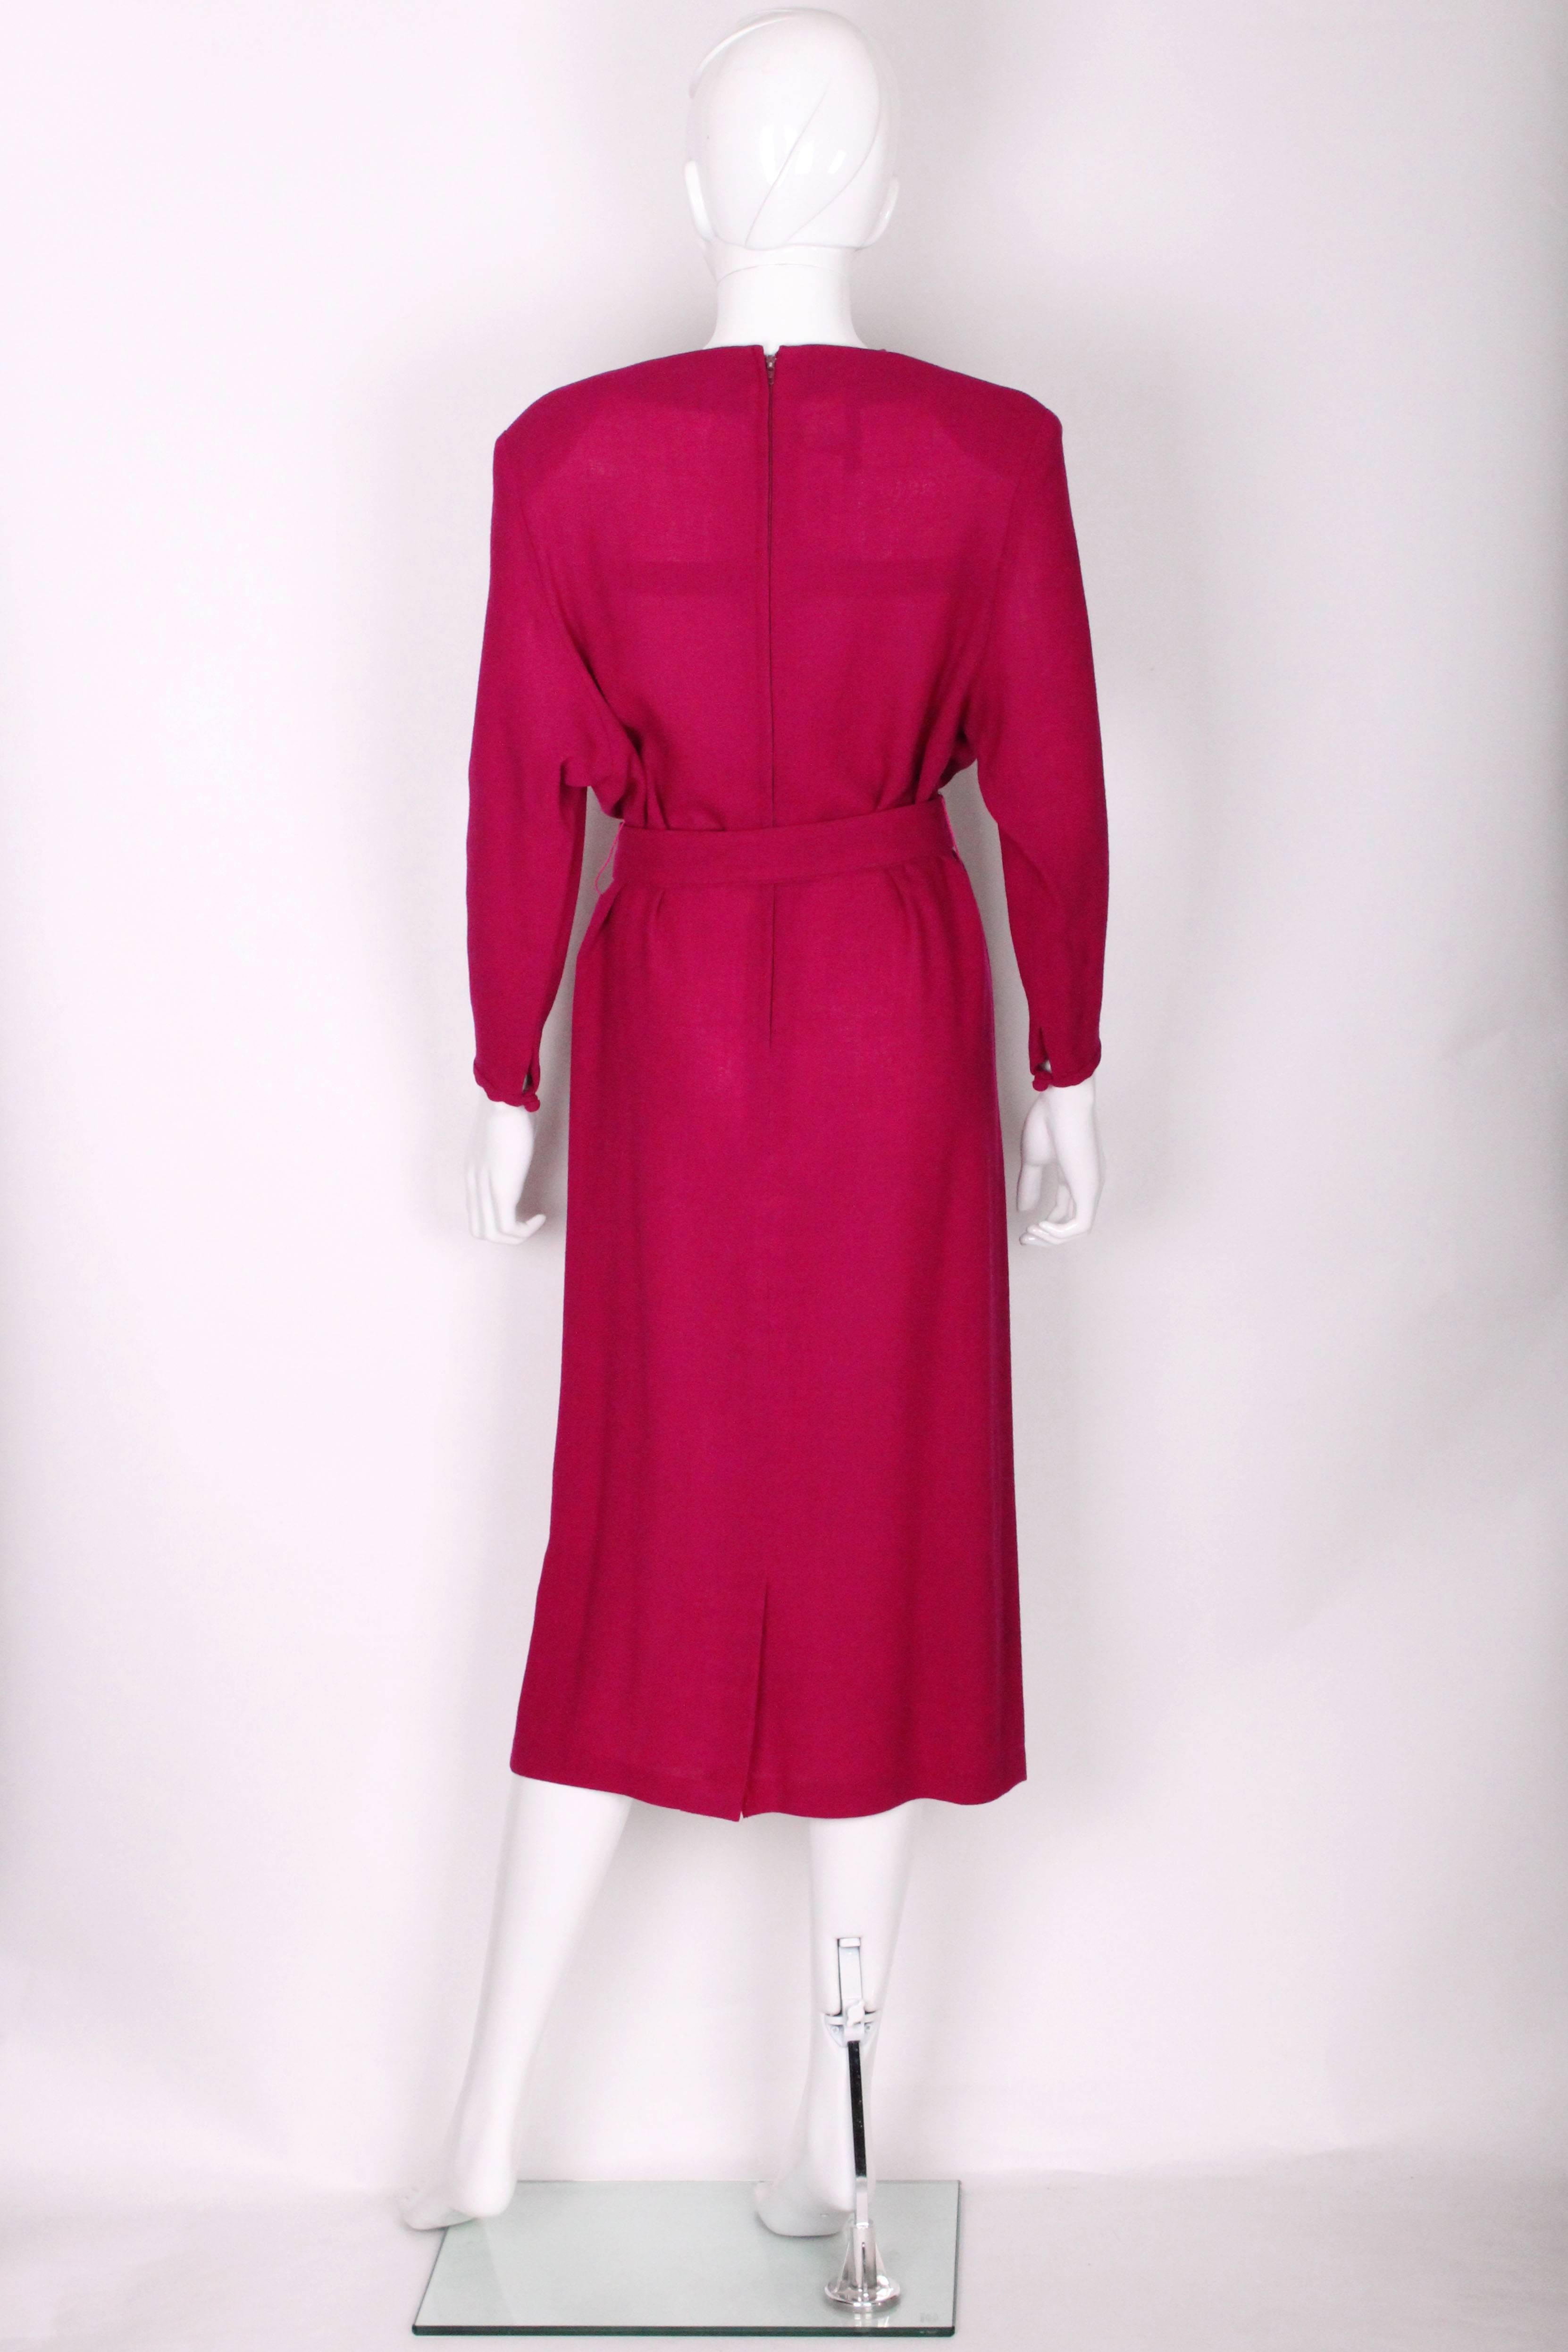 Women's 1980's Biba Wool Crepe Dress.